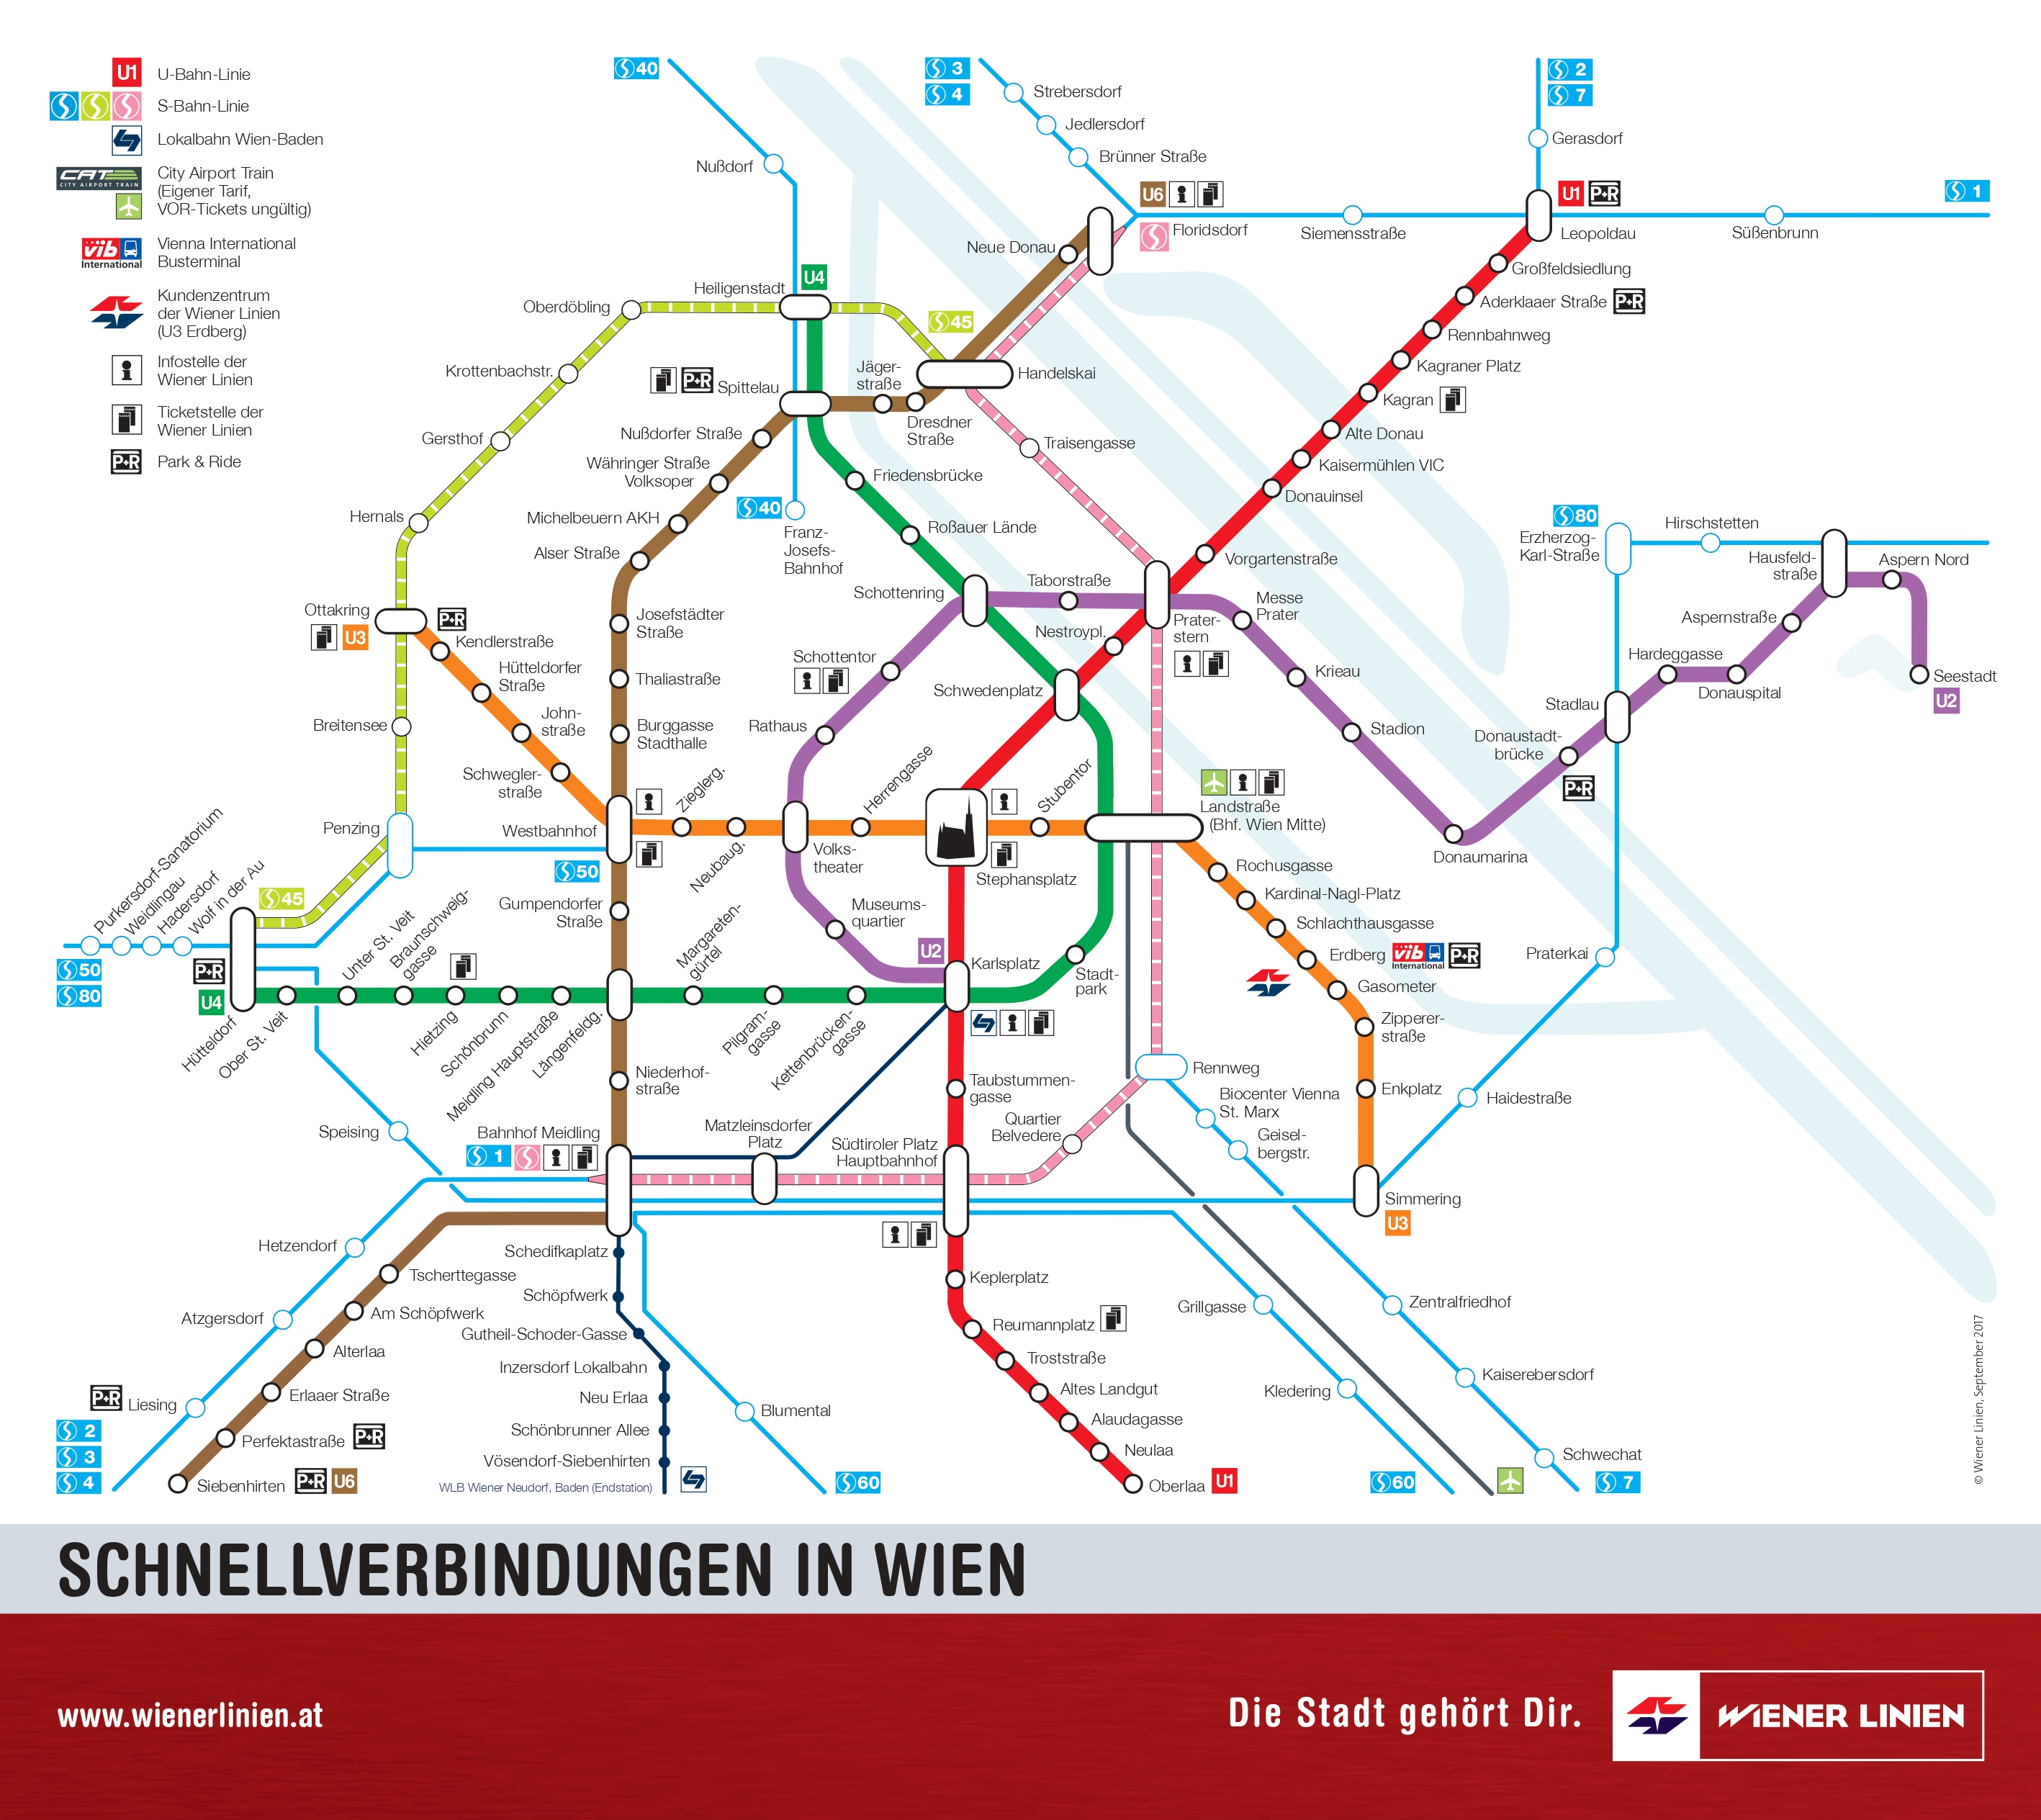 ウィーンの地下鉄 トラムの乗り方ガイド 路線図 時刻表 料金 切符 アプリ ロコタビ